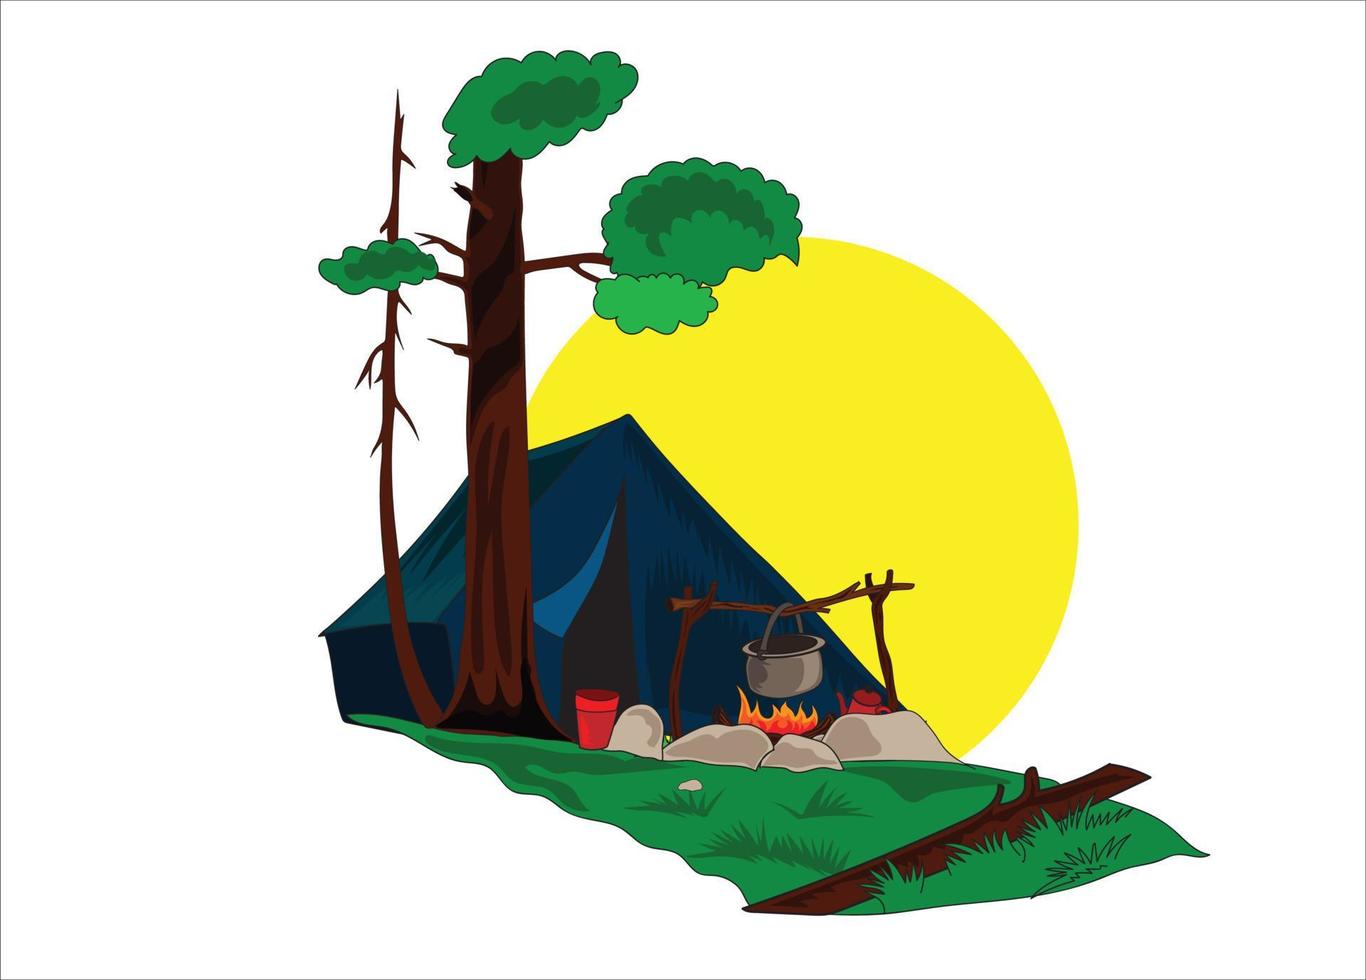 pique-nique camping illustration vectorielle sur fond blanc vecteur